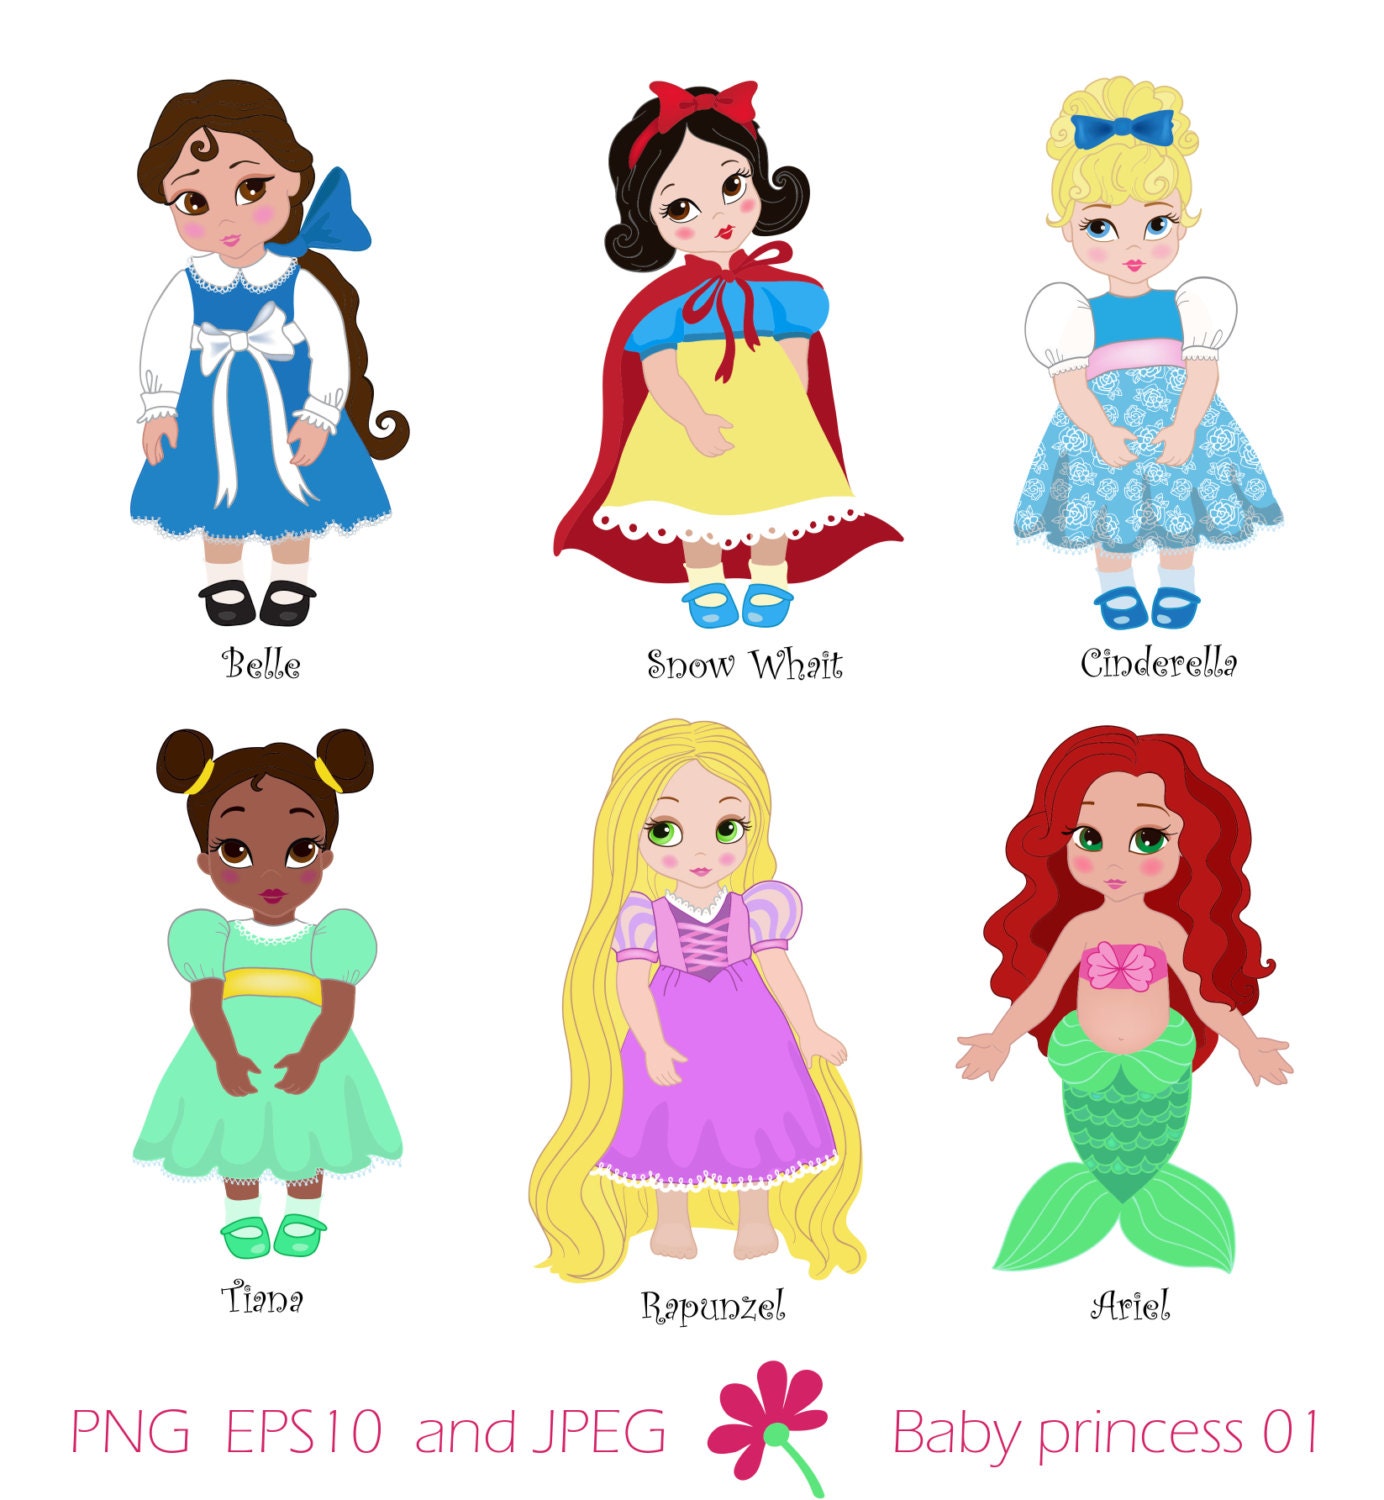 Download Baby princess Disney vectorizada - Imagui